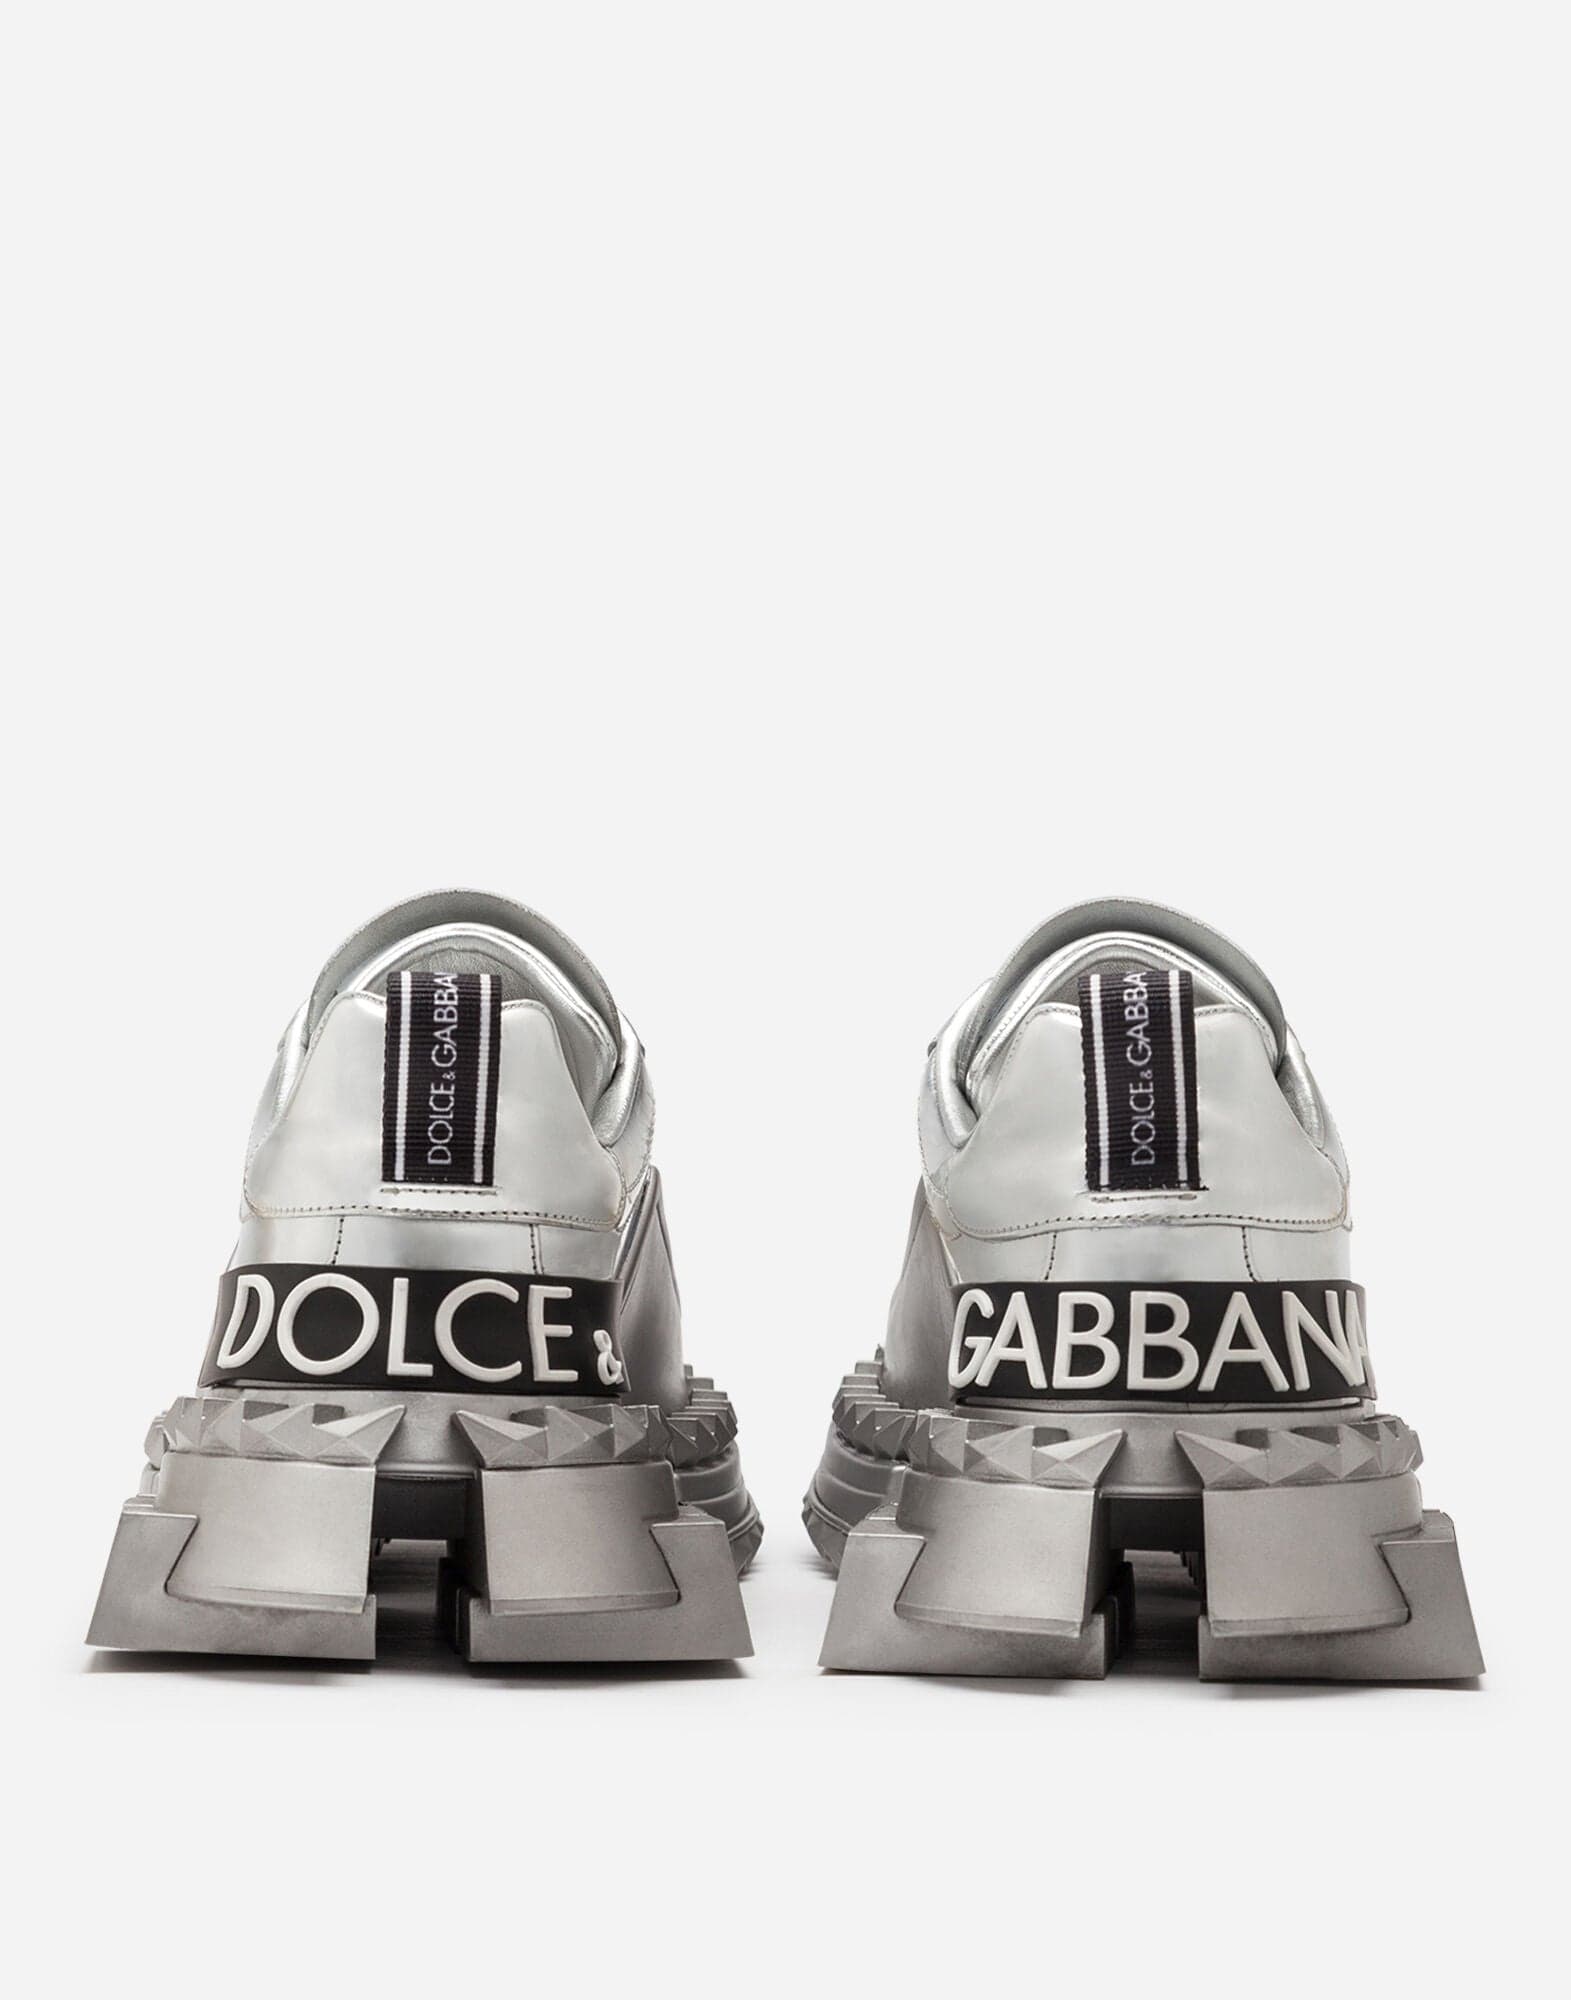 Dolce & Gabbana Mirrored Calfskin Super Queen Sneakers